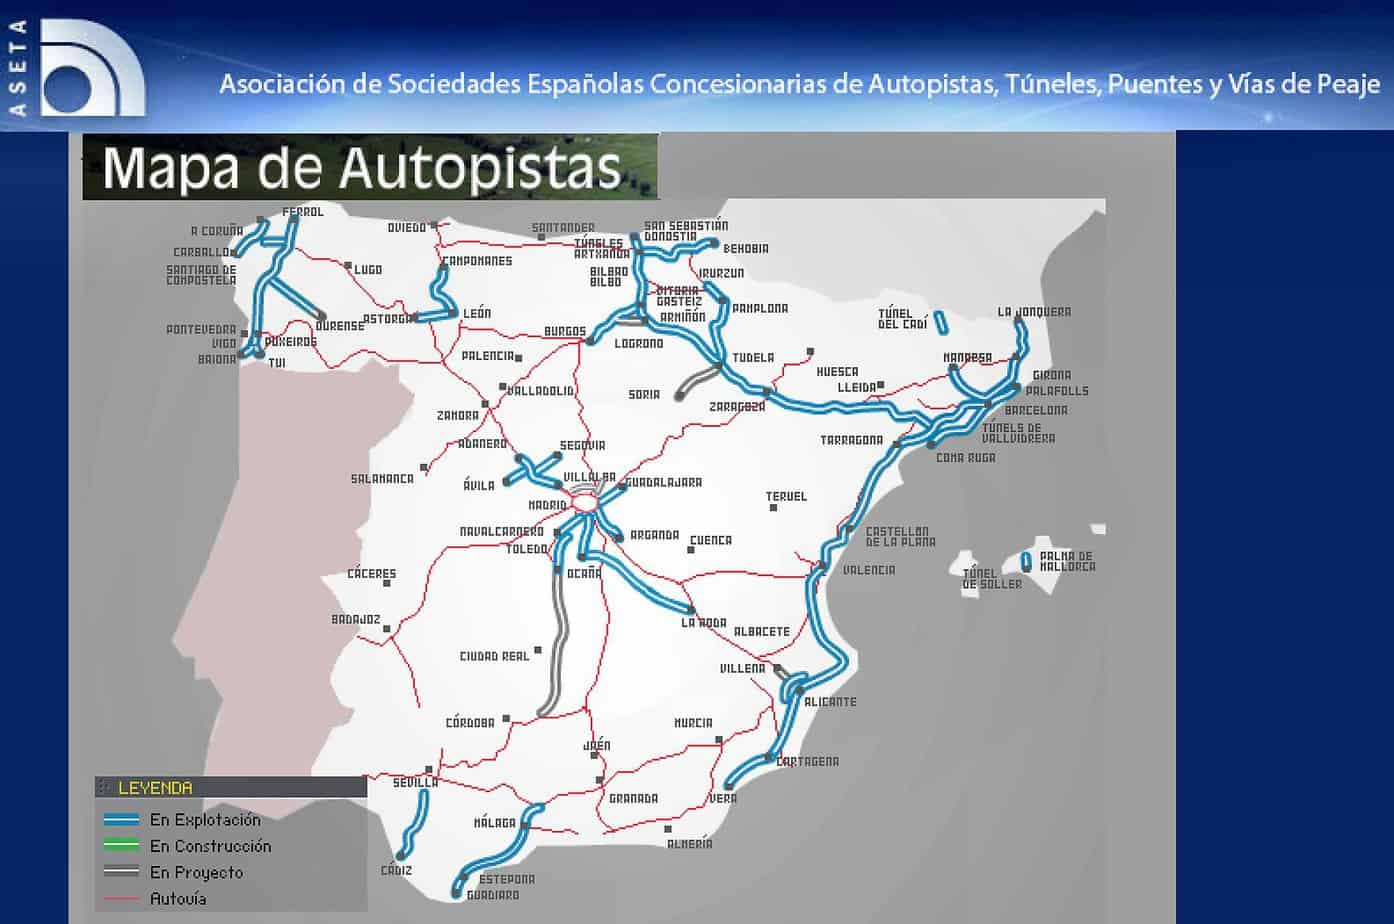 Le autostrade in Spagna: in colore blu quelle in esercizio, in grigio quelle in progetto